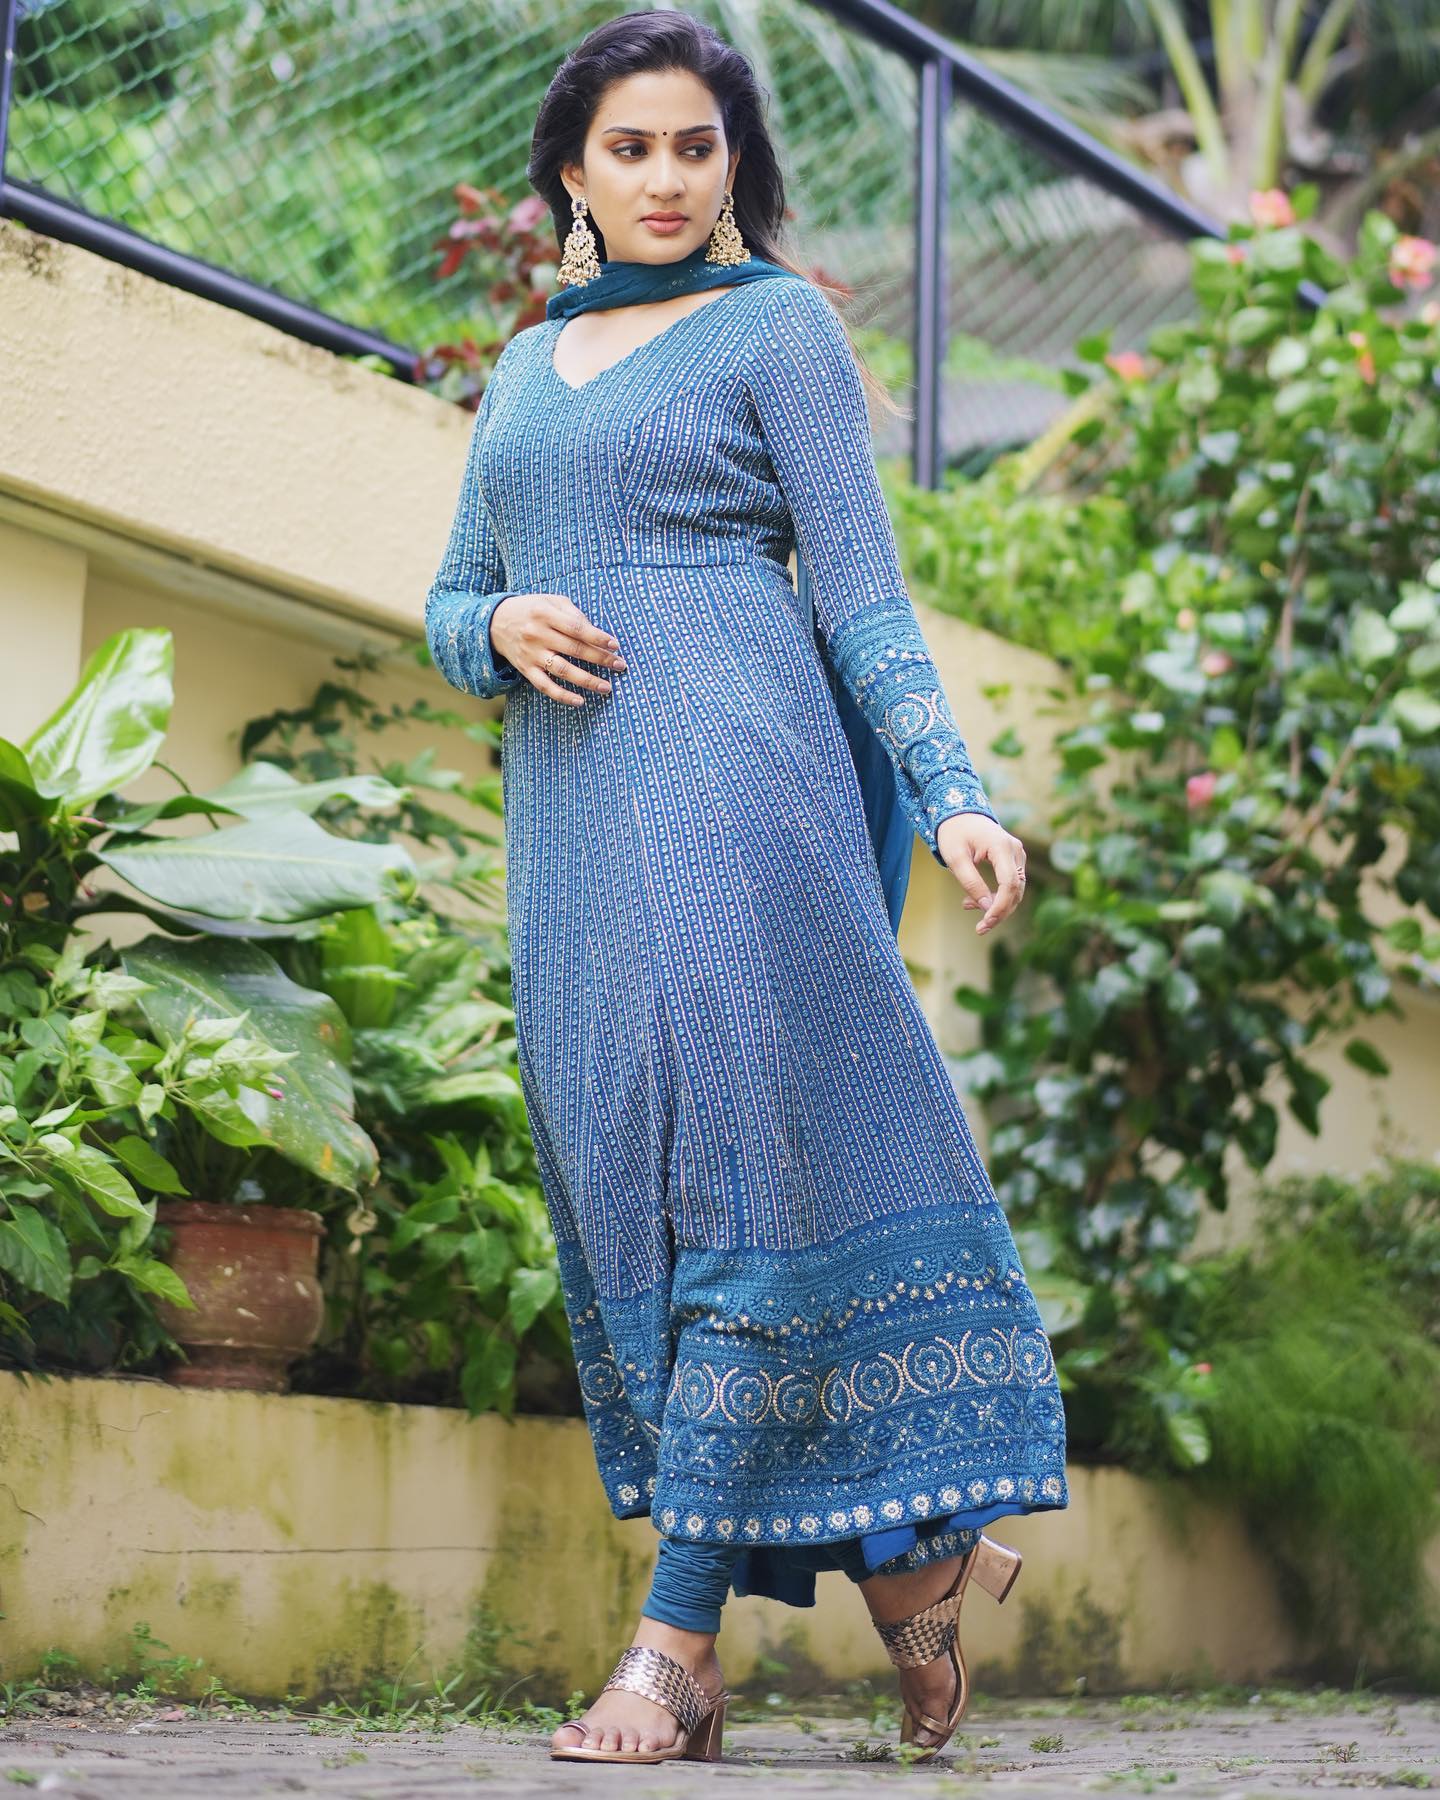 aditi-ravi-in-blue-a-line-dress-003.jpg